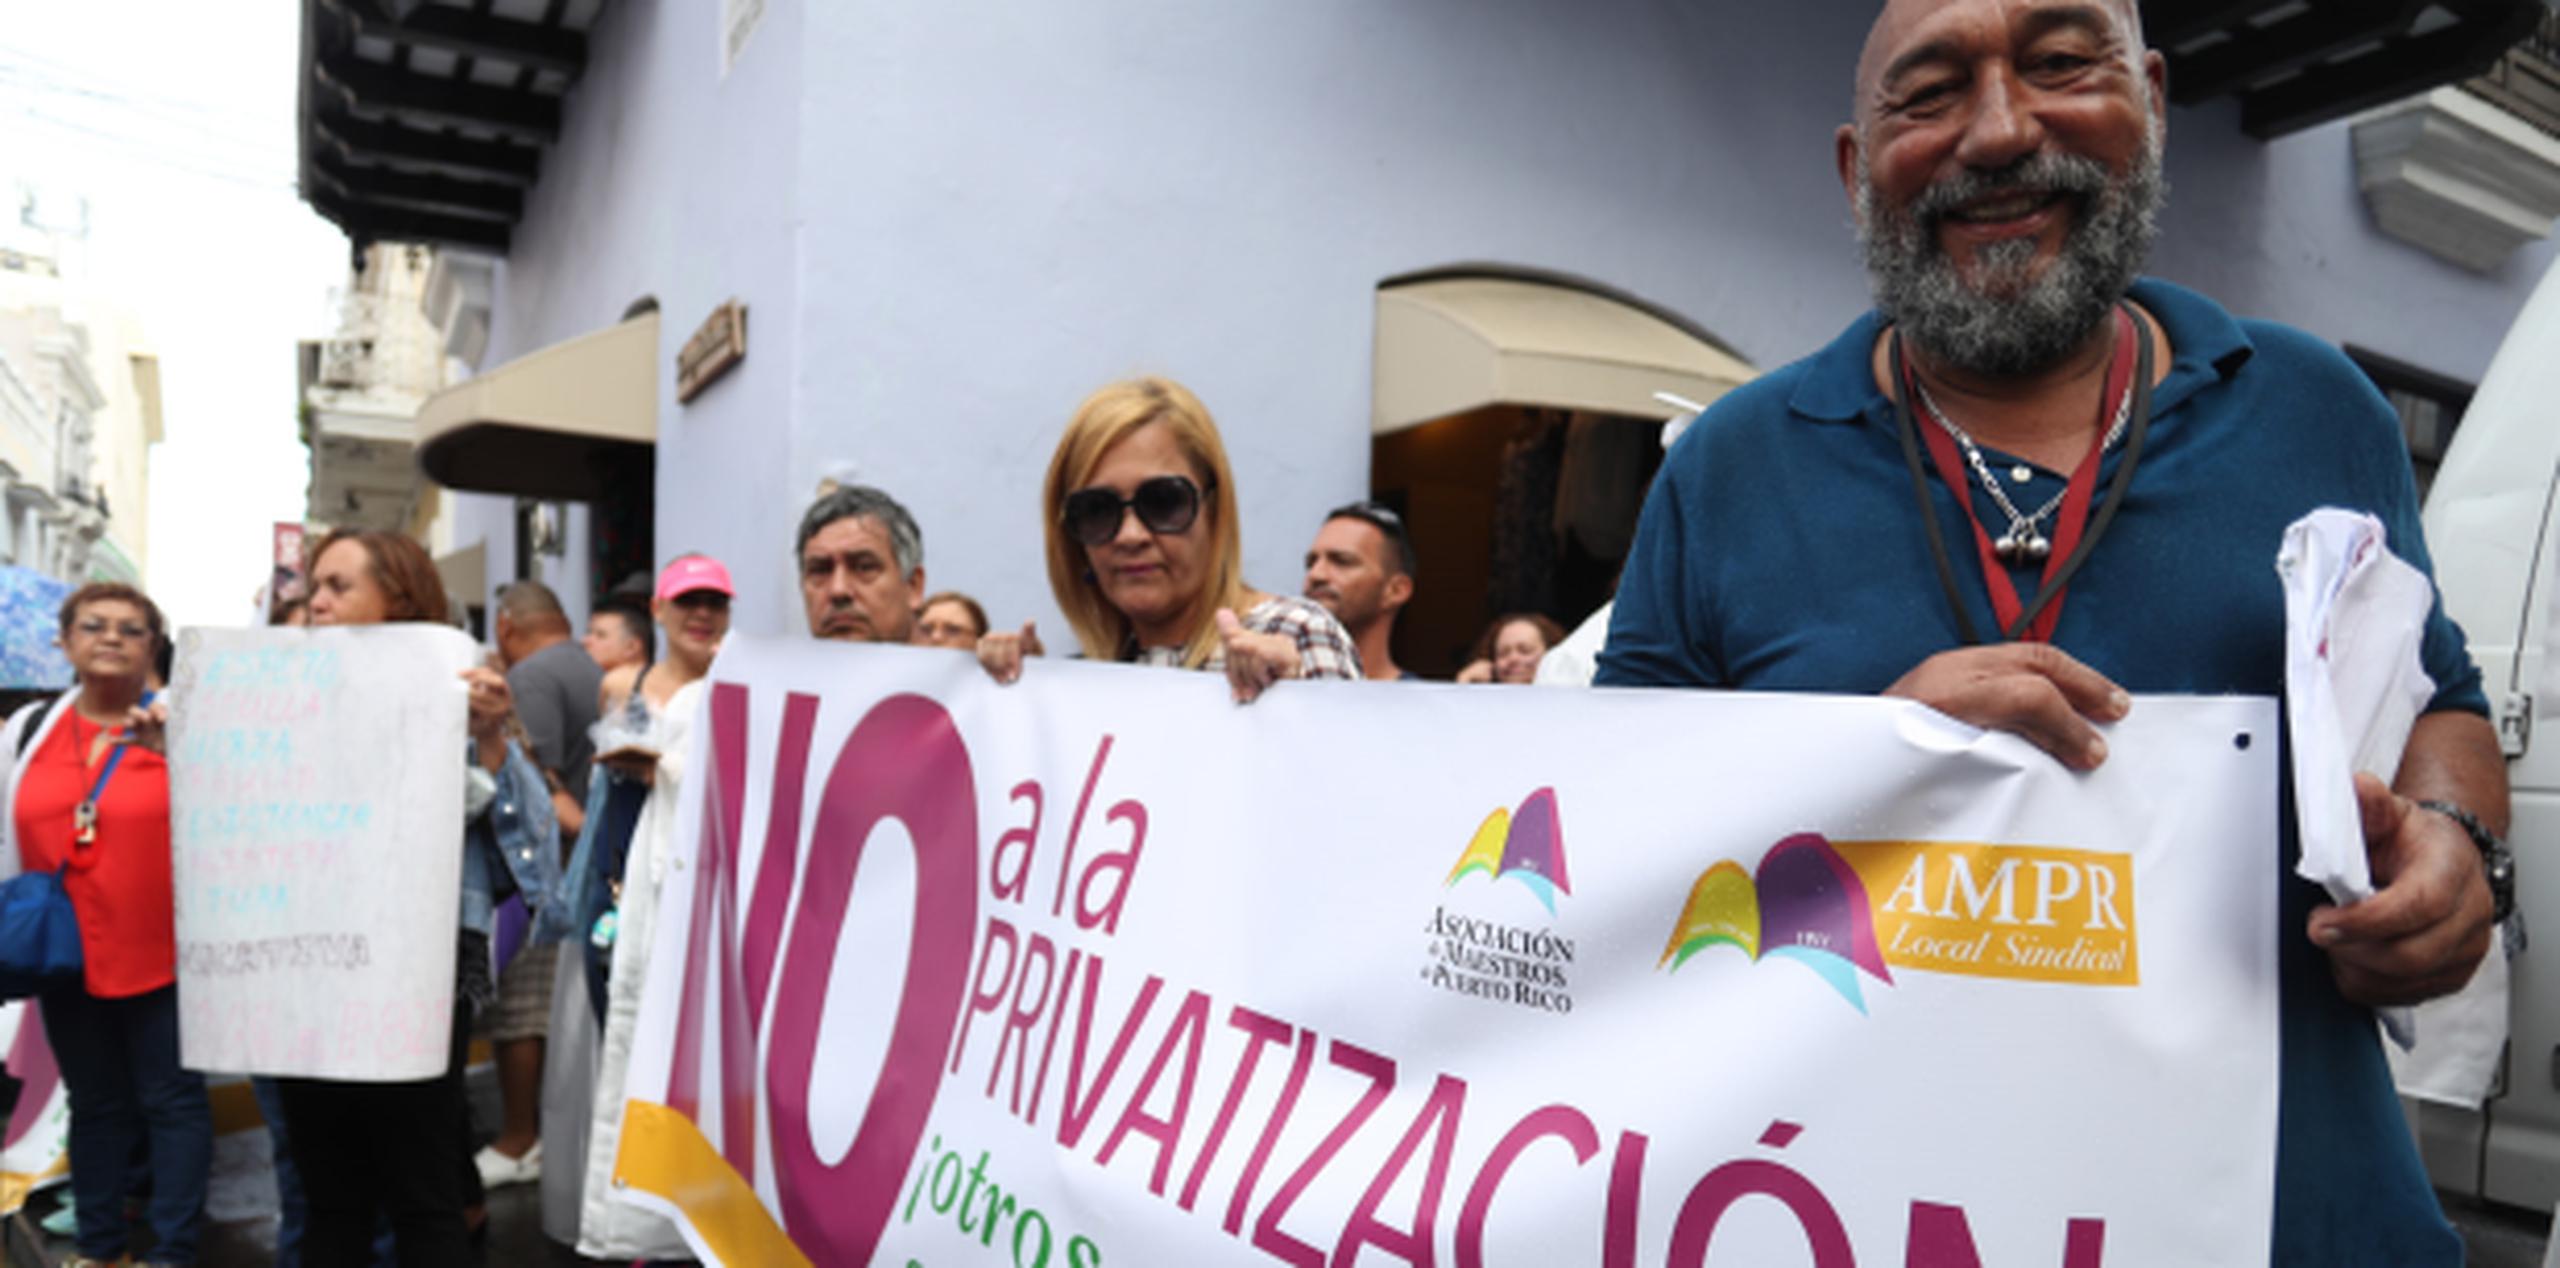 Díaz dejó claro que utilizará todos los foros disponibles para defender a los maestros, sus pensiones y a los niños y sus escuelas. (Archivo)